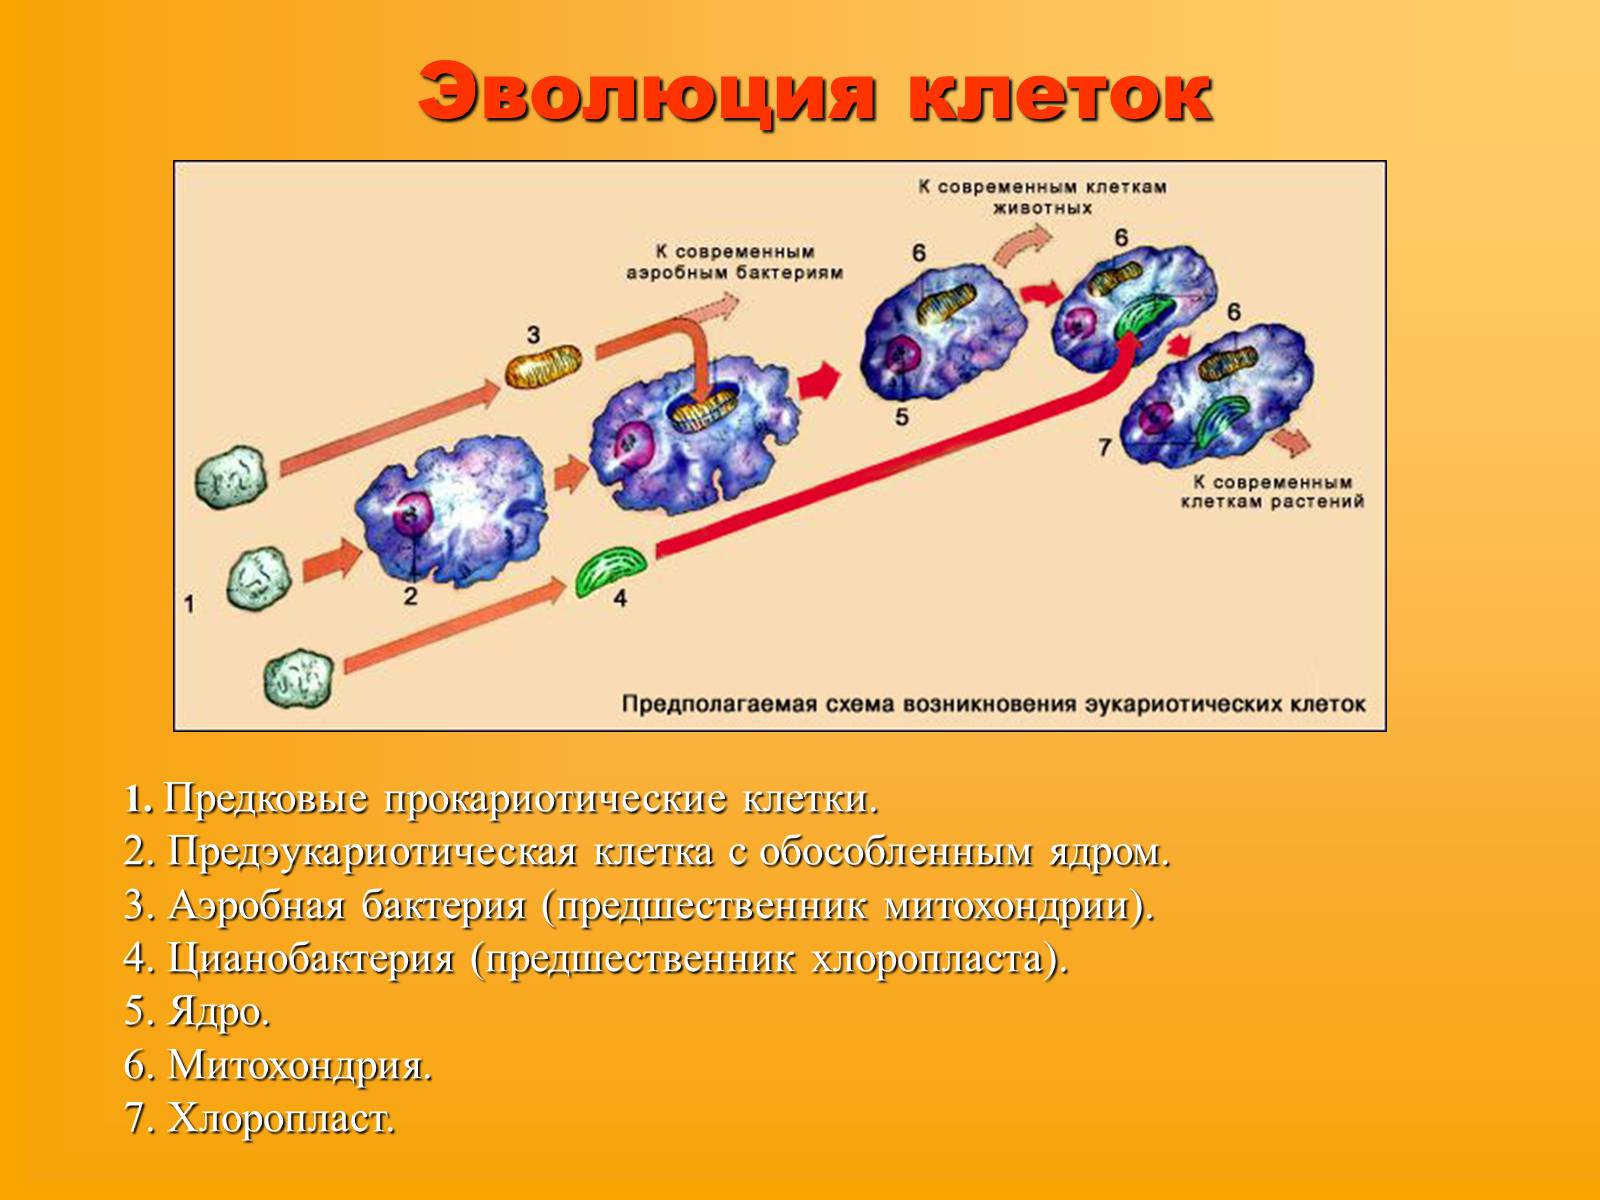 Возникновение клеточной формы жизни. Эволюция эукариотической клетки. Схема эволюции эукариотических клеток. Эволюция клеток возникновение эукариот схема. Какие основные этапы эволюции клетки эукариот.